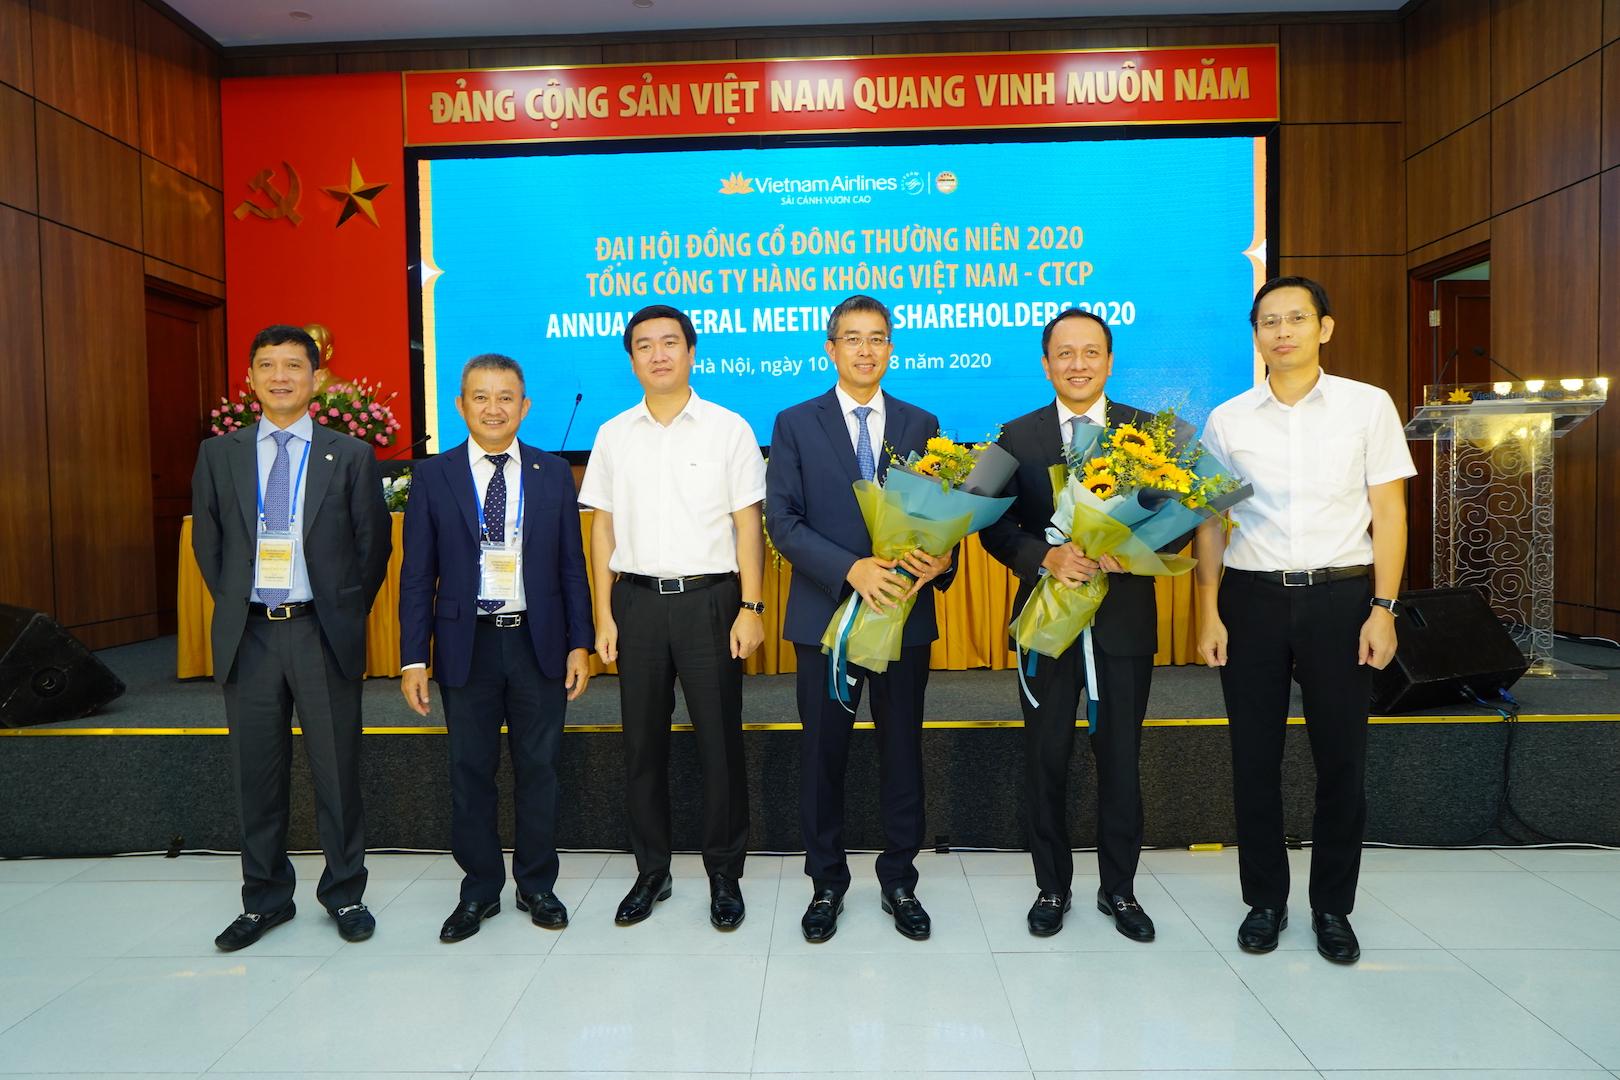 Tổng Công ty Hàng không Việt Nam tổ chức thành công Đại hội đồng cổ đông thường niên năm 2020